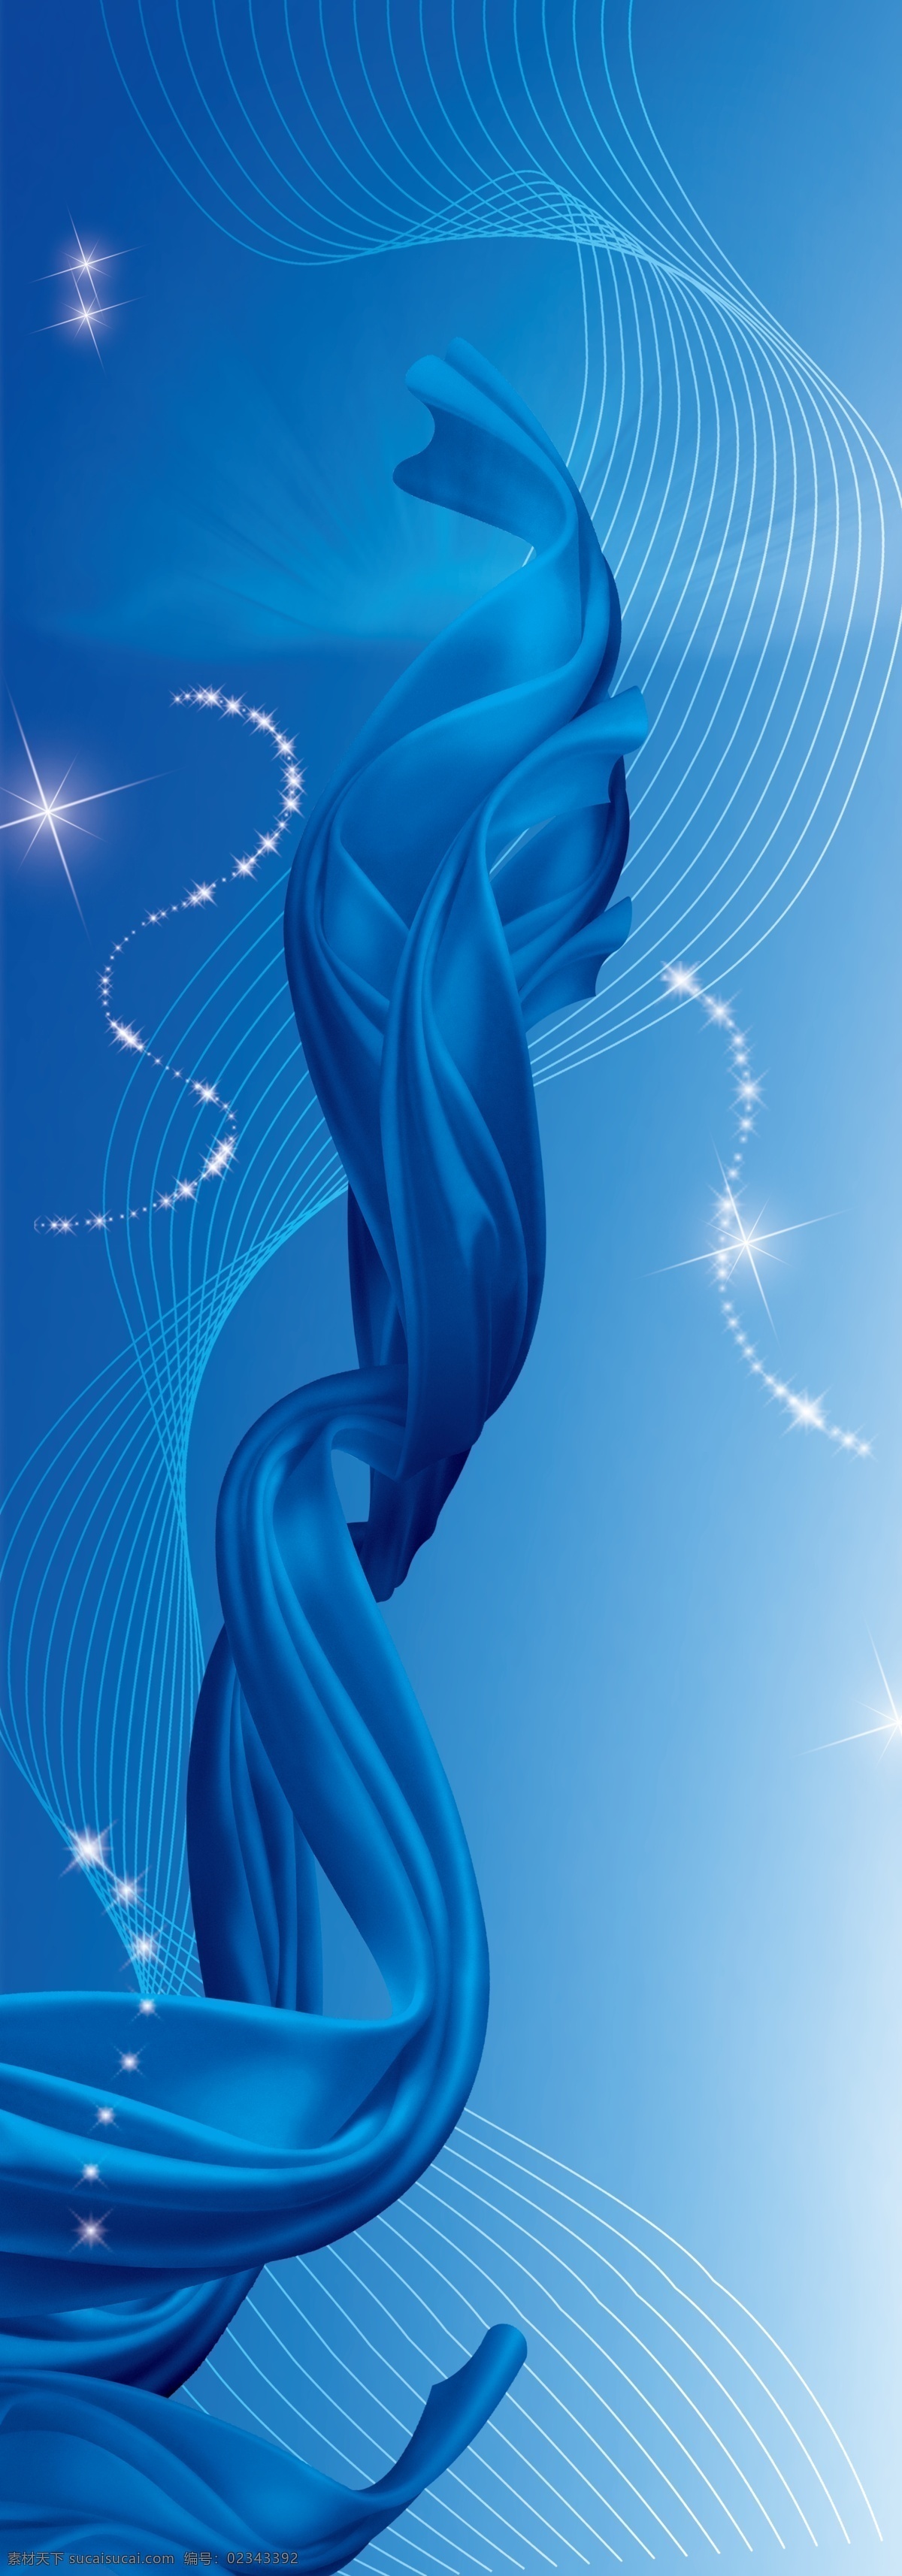 蓝色飘带 绸带 蓝色 蓝色背景 背景 星光 展板模板 广告设计模板 源文件